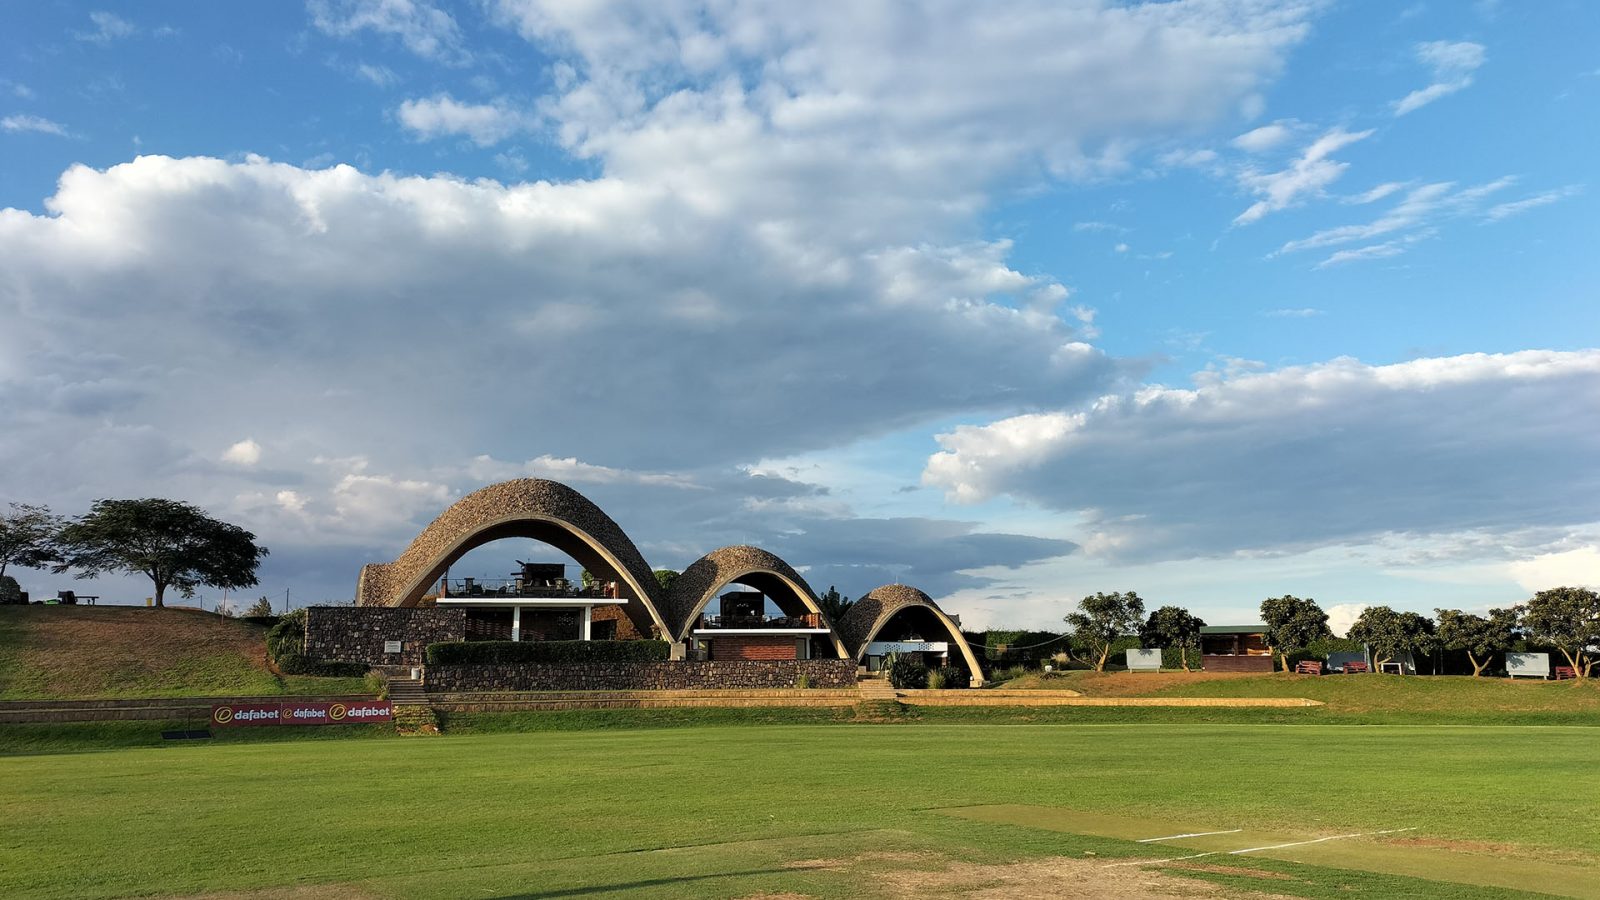 Gahanga Cricket Stadium